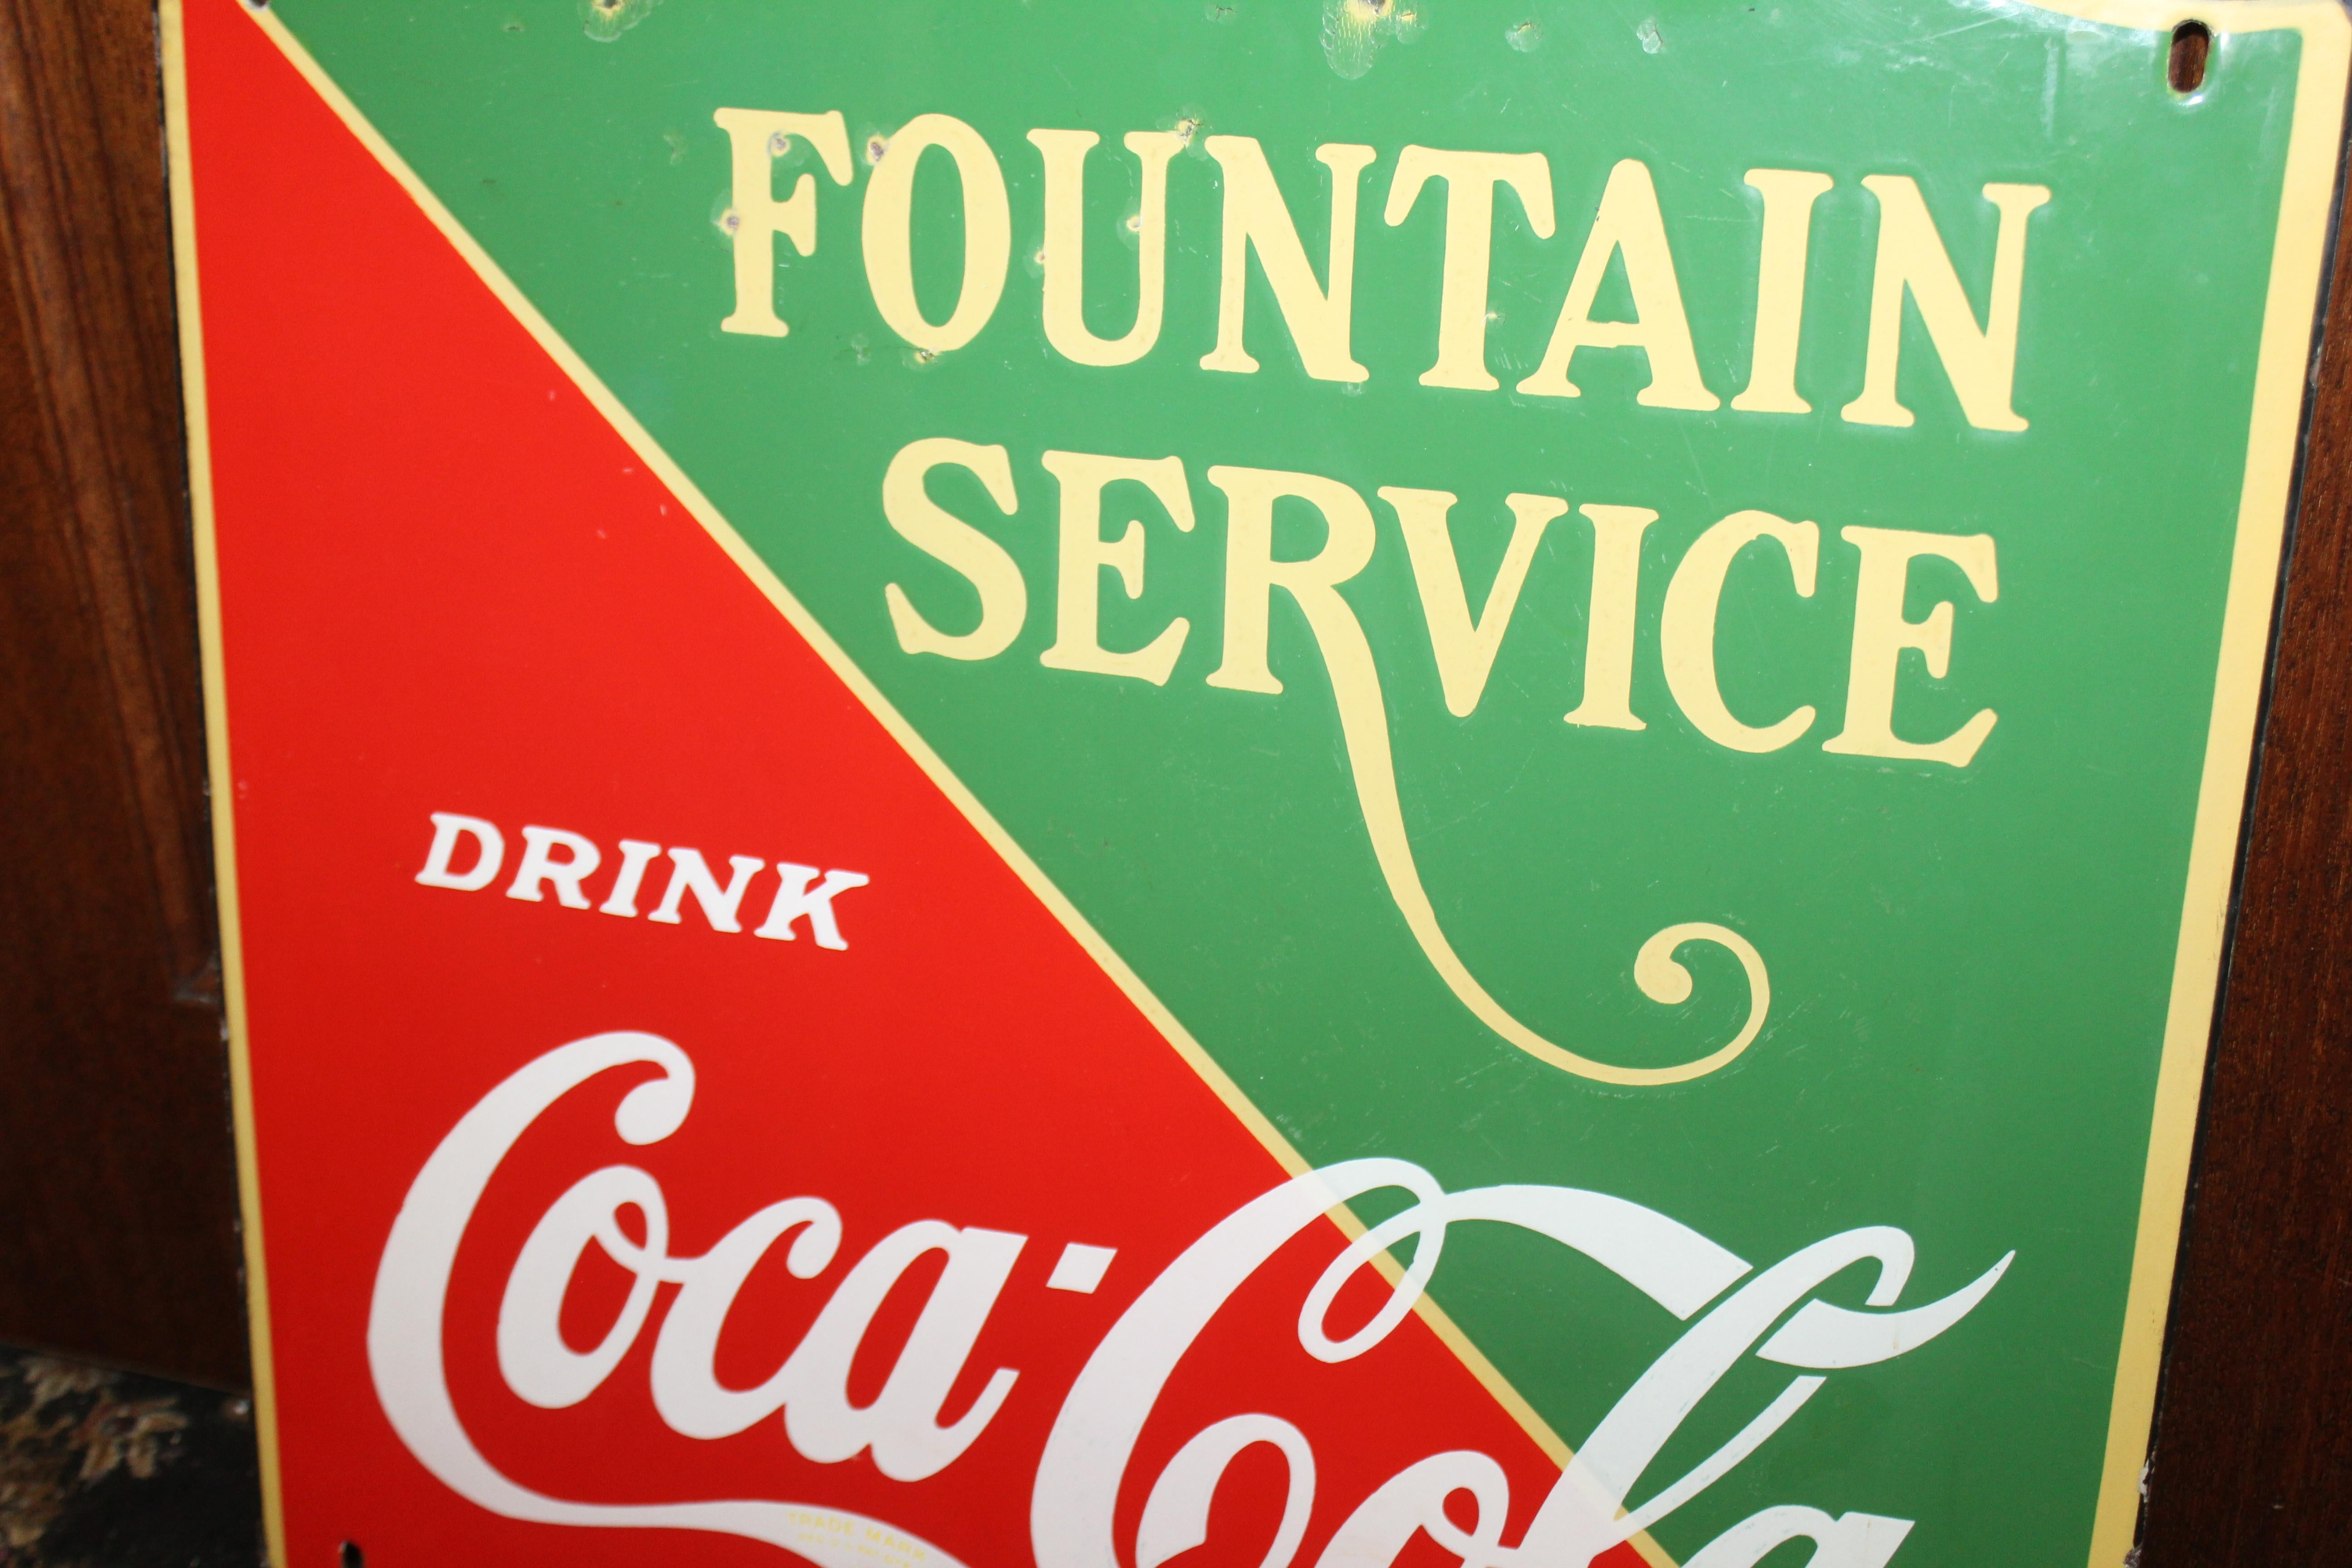 coca cola fountain service sign